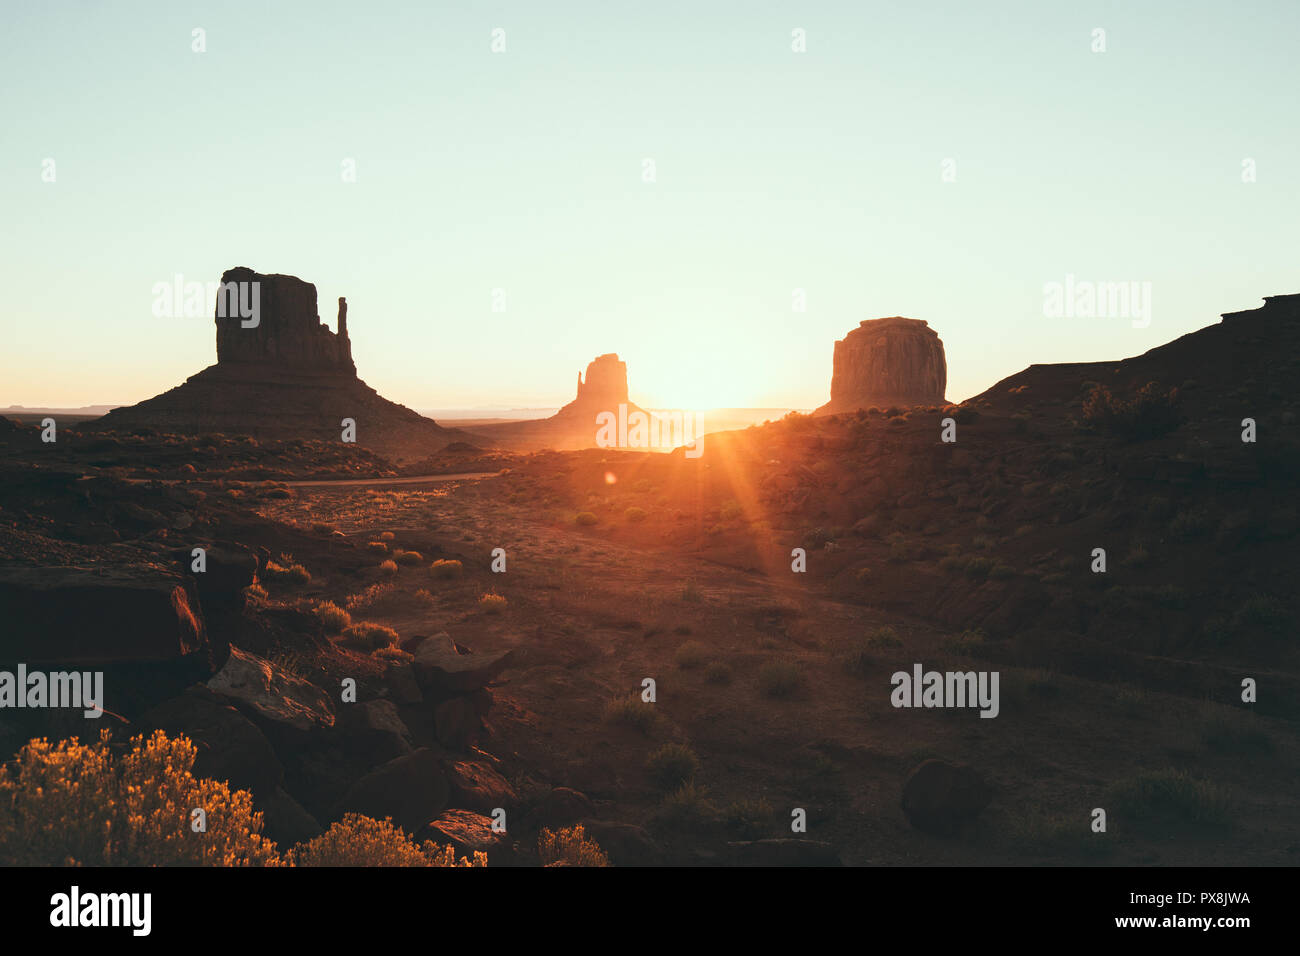 Klassische Ansicht des malerischen Monument Valley mit dem berühmten Fäustlinge und Merrick Butte im schönen goldenen Morgenlicht bei Sonnenaufgang im Sommer mit retro vin Stockfoto